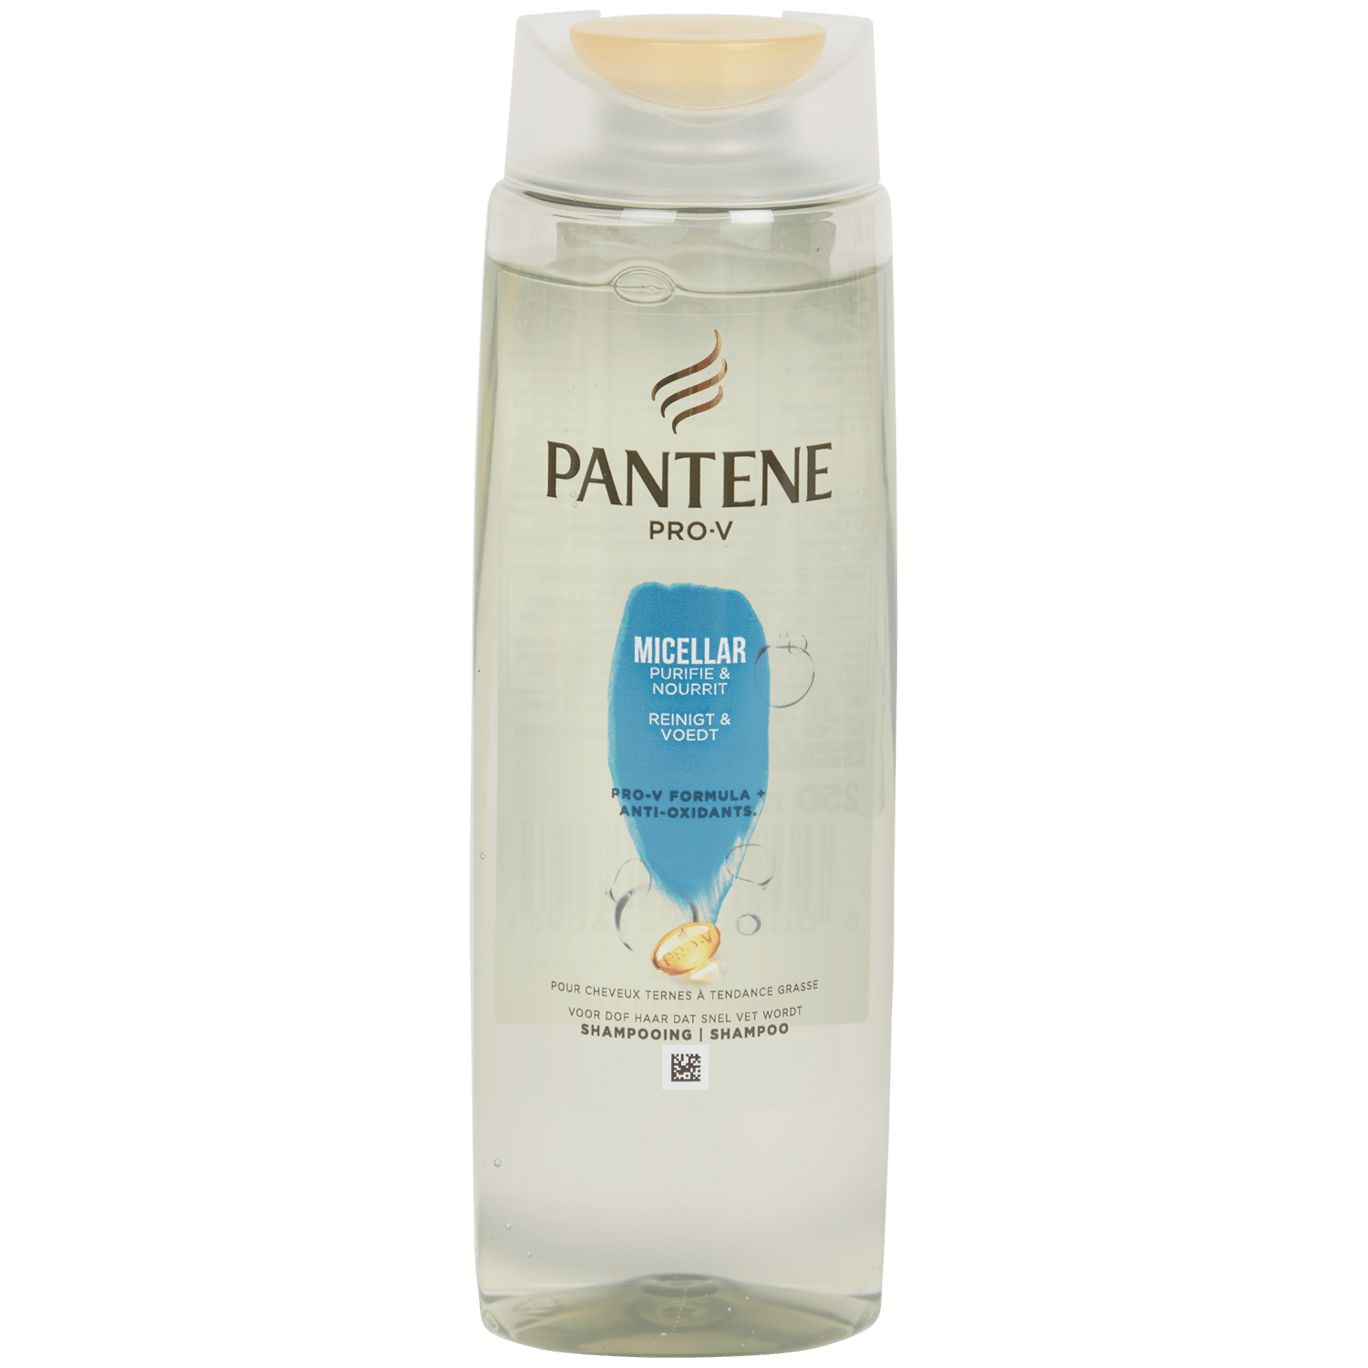 Pantene shampoo Pro-V | Action.com